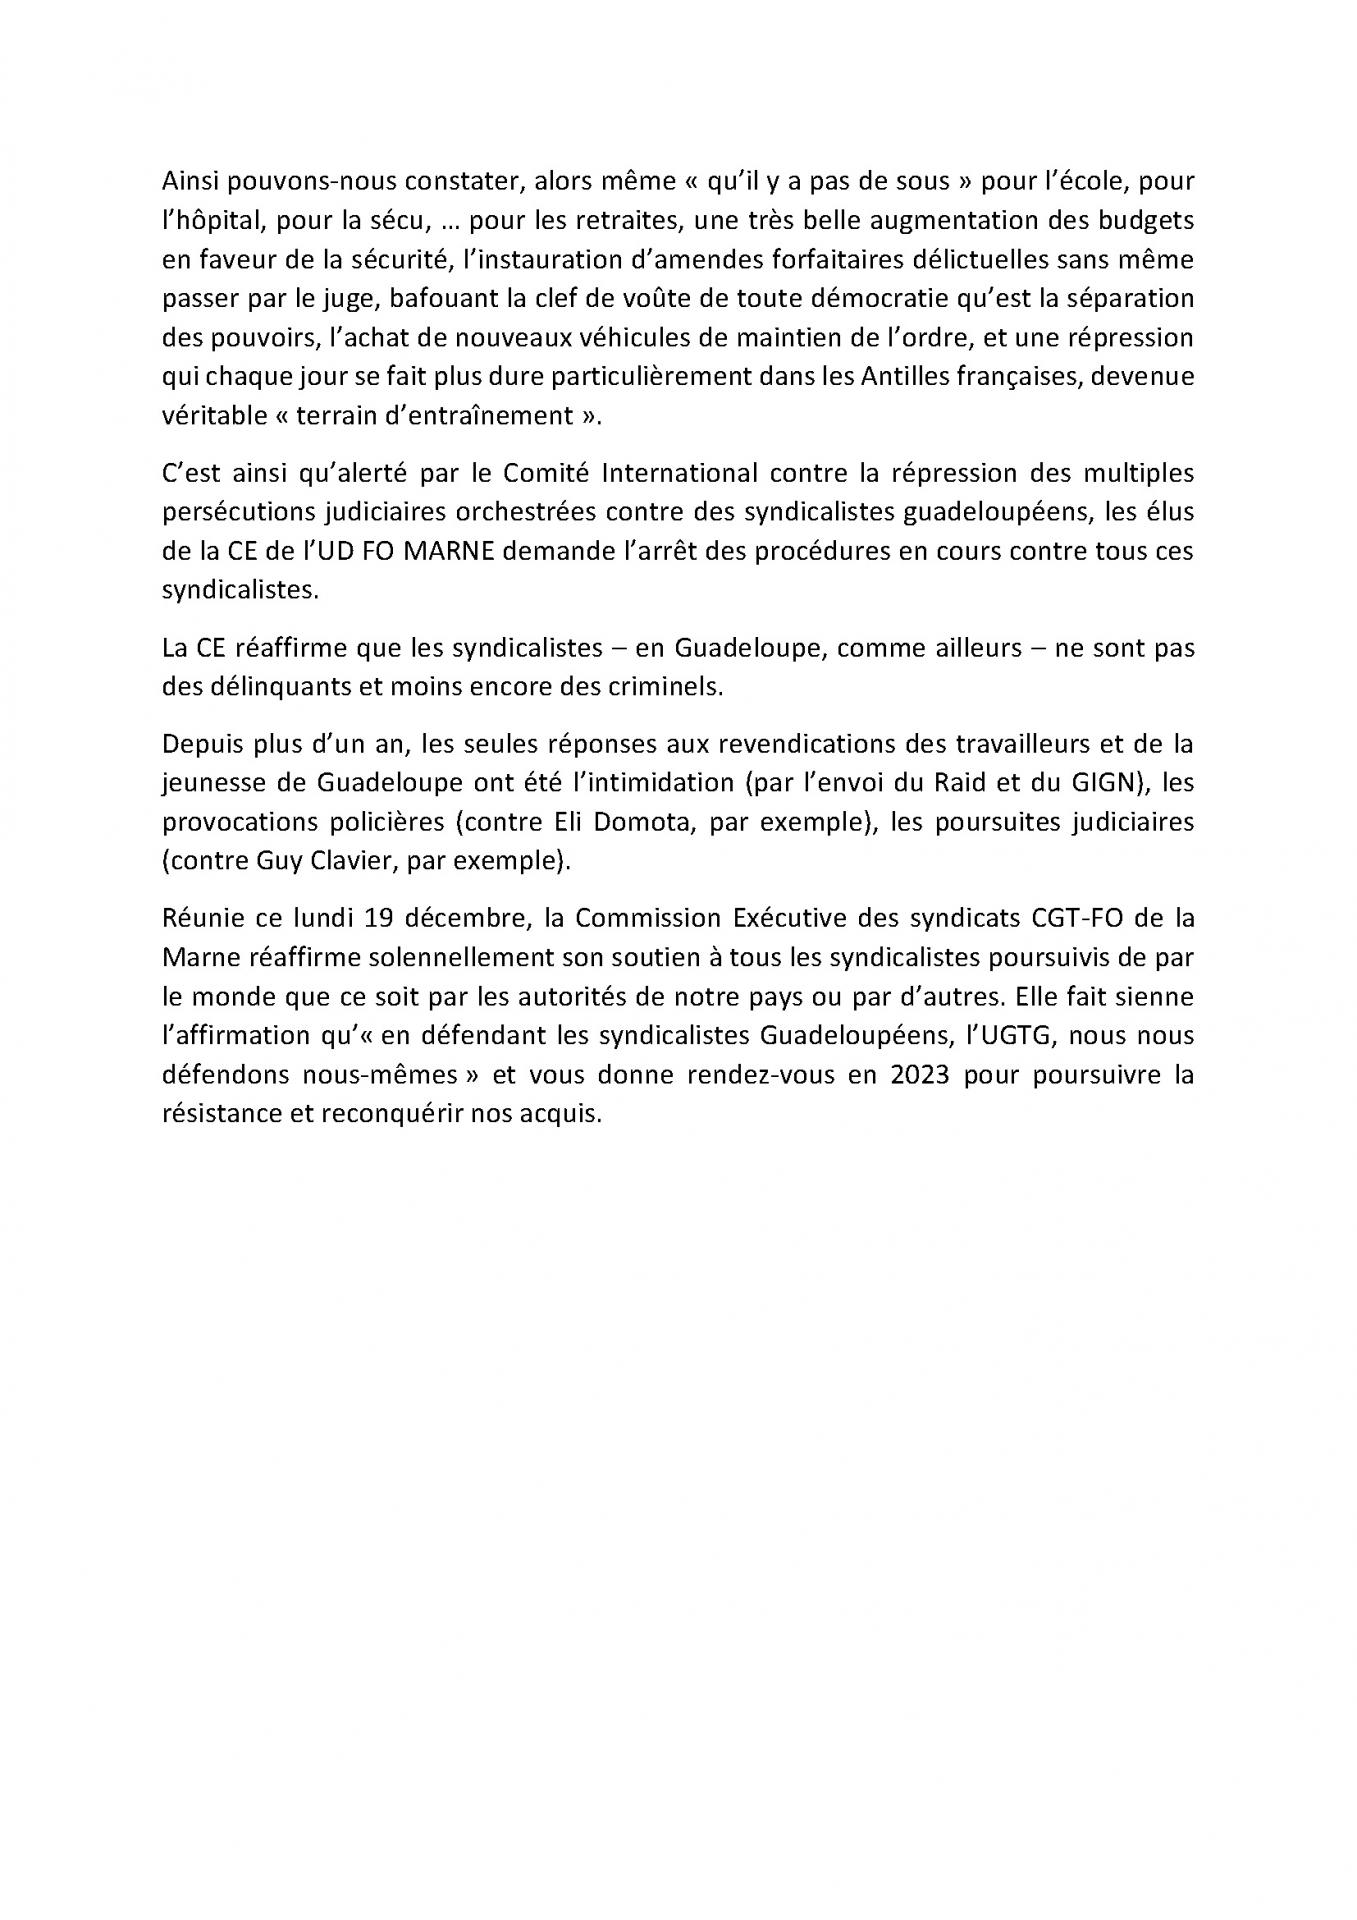 Déclaration CE udfo51 du 19-12-2022 suite